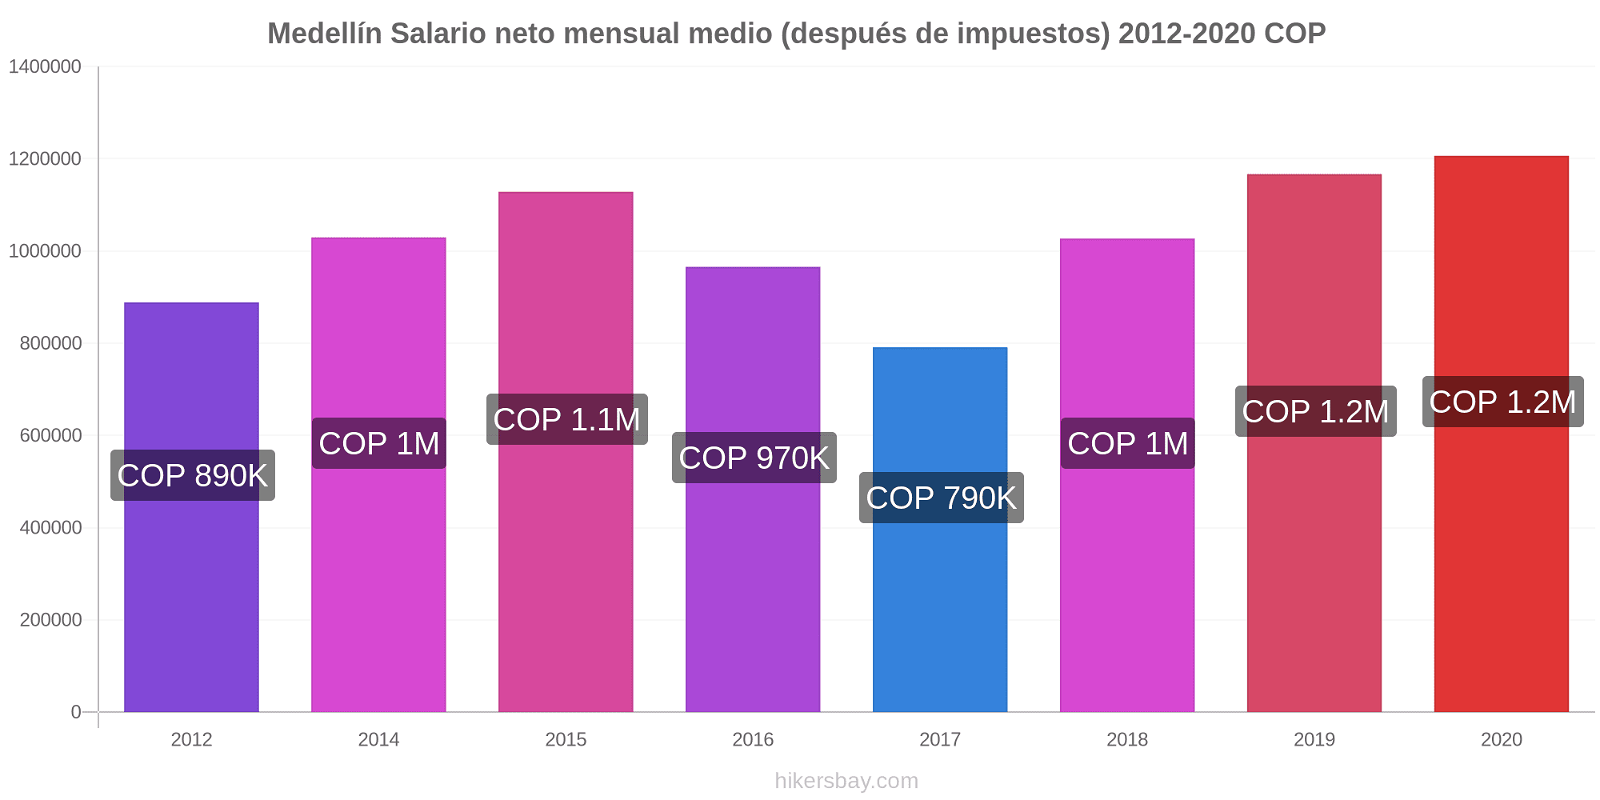 Medellín cambios de precios Promedio mensual del salario neto (después de pagar impuestos) hikersbay.com